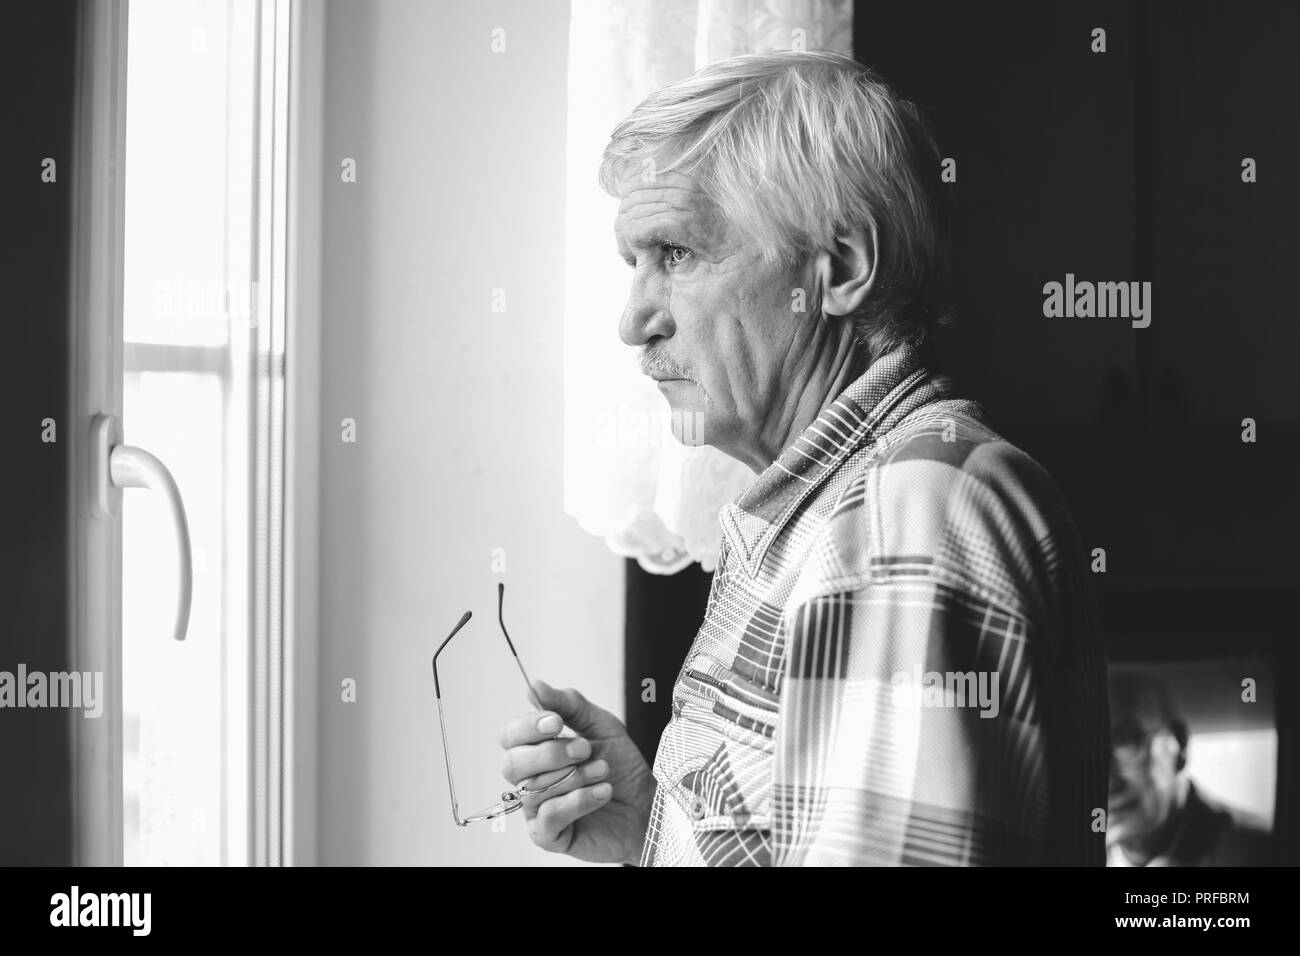 Portrait d'un homme aux cheveux gris à 60 ans. Un homme regarde par la fenêtre. L'homme a une mauvaise vision, il porte des lunettes Banque D'Images